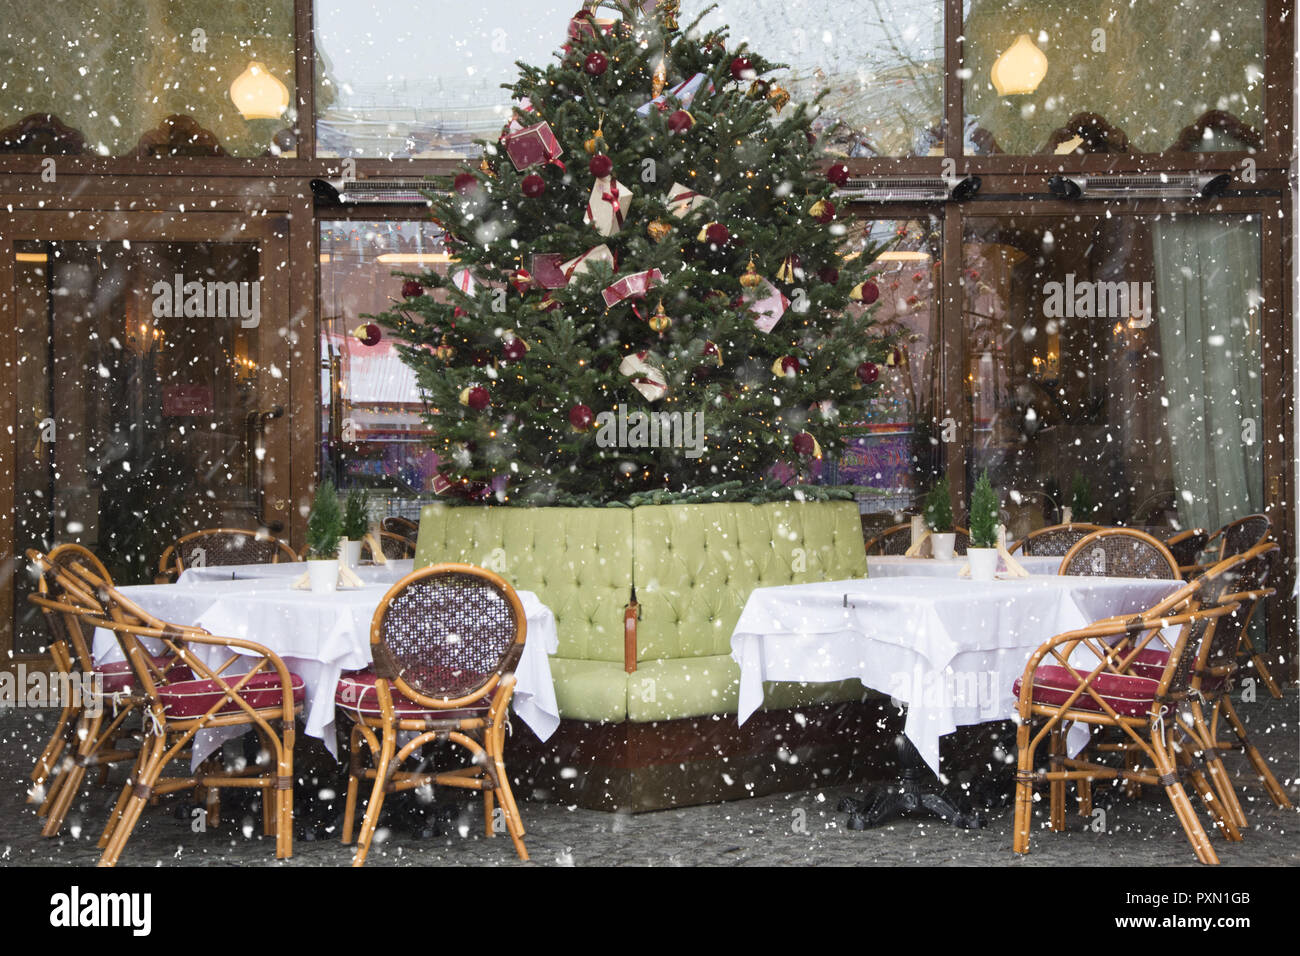 Decorazioni Natalizie Per Bar.Decorazioni Di Natale Per Bar O Ristorante All Esterno Foto Stock Alamy